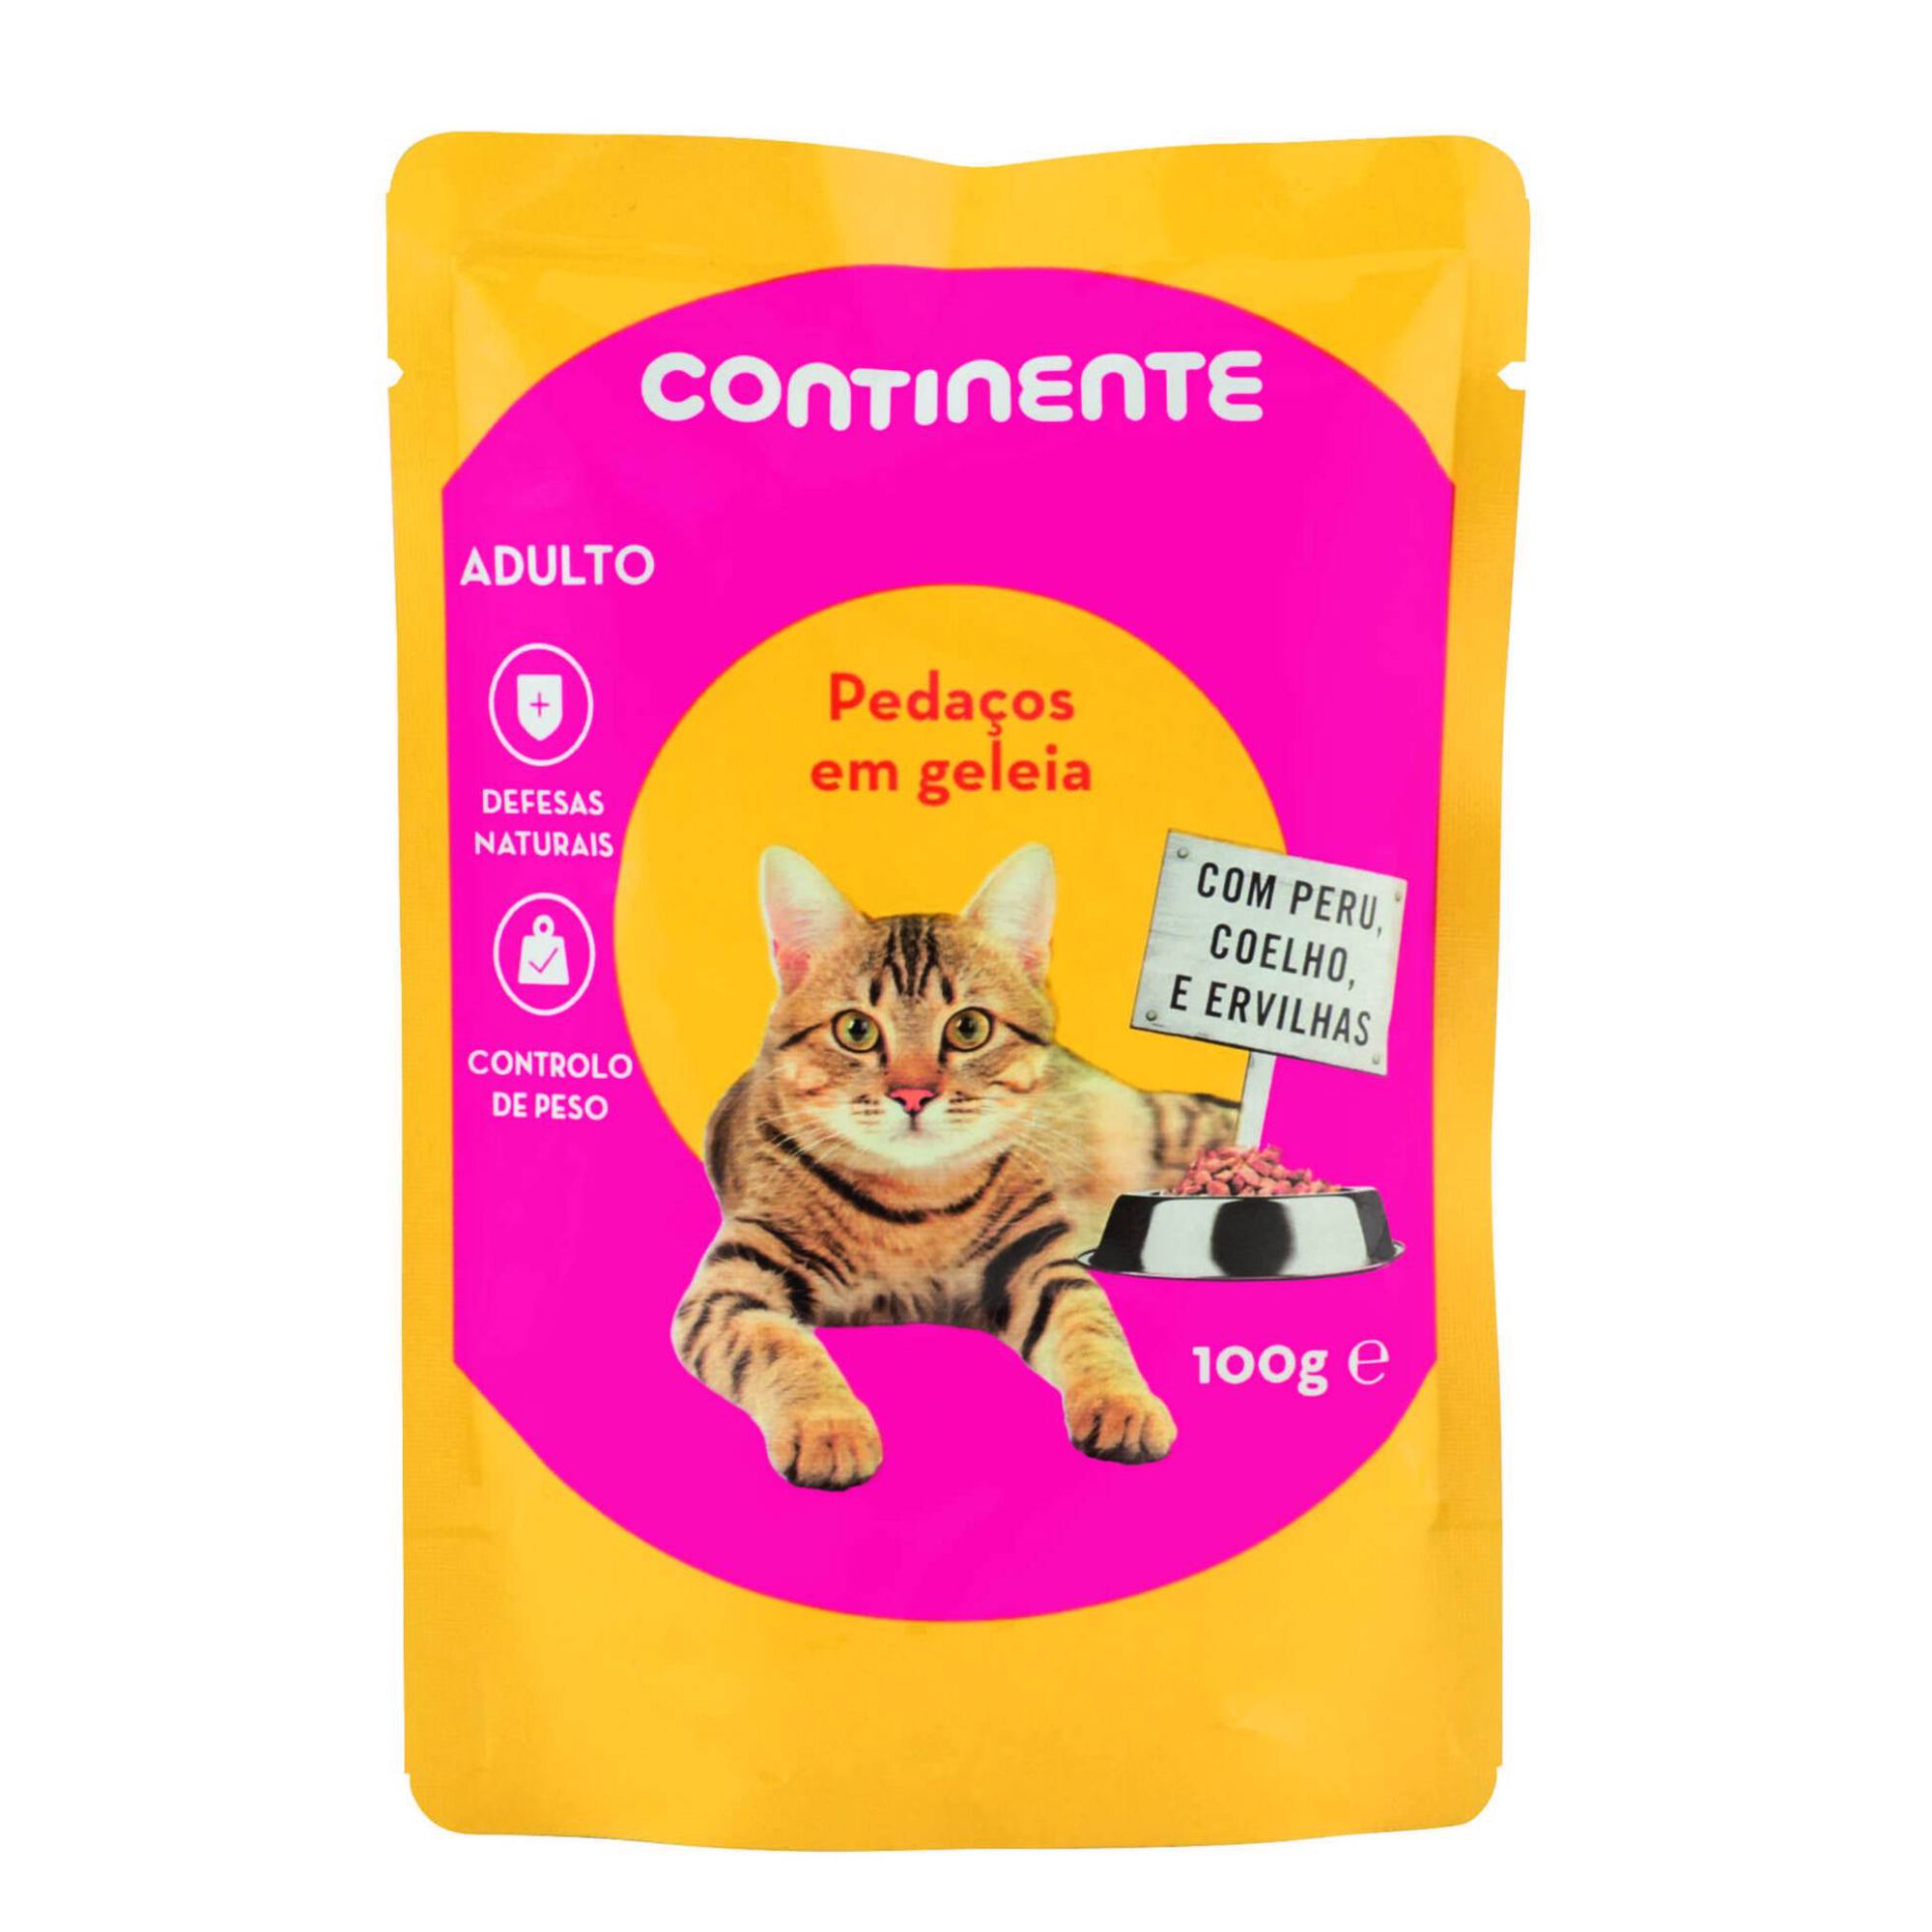 Comida Húmida para Gato Adulto Pedaços em Geleia Perú, Coelho e Ervilhas Saquetas